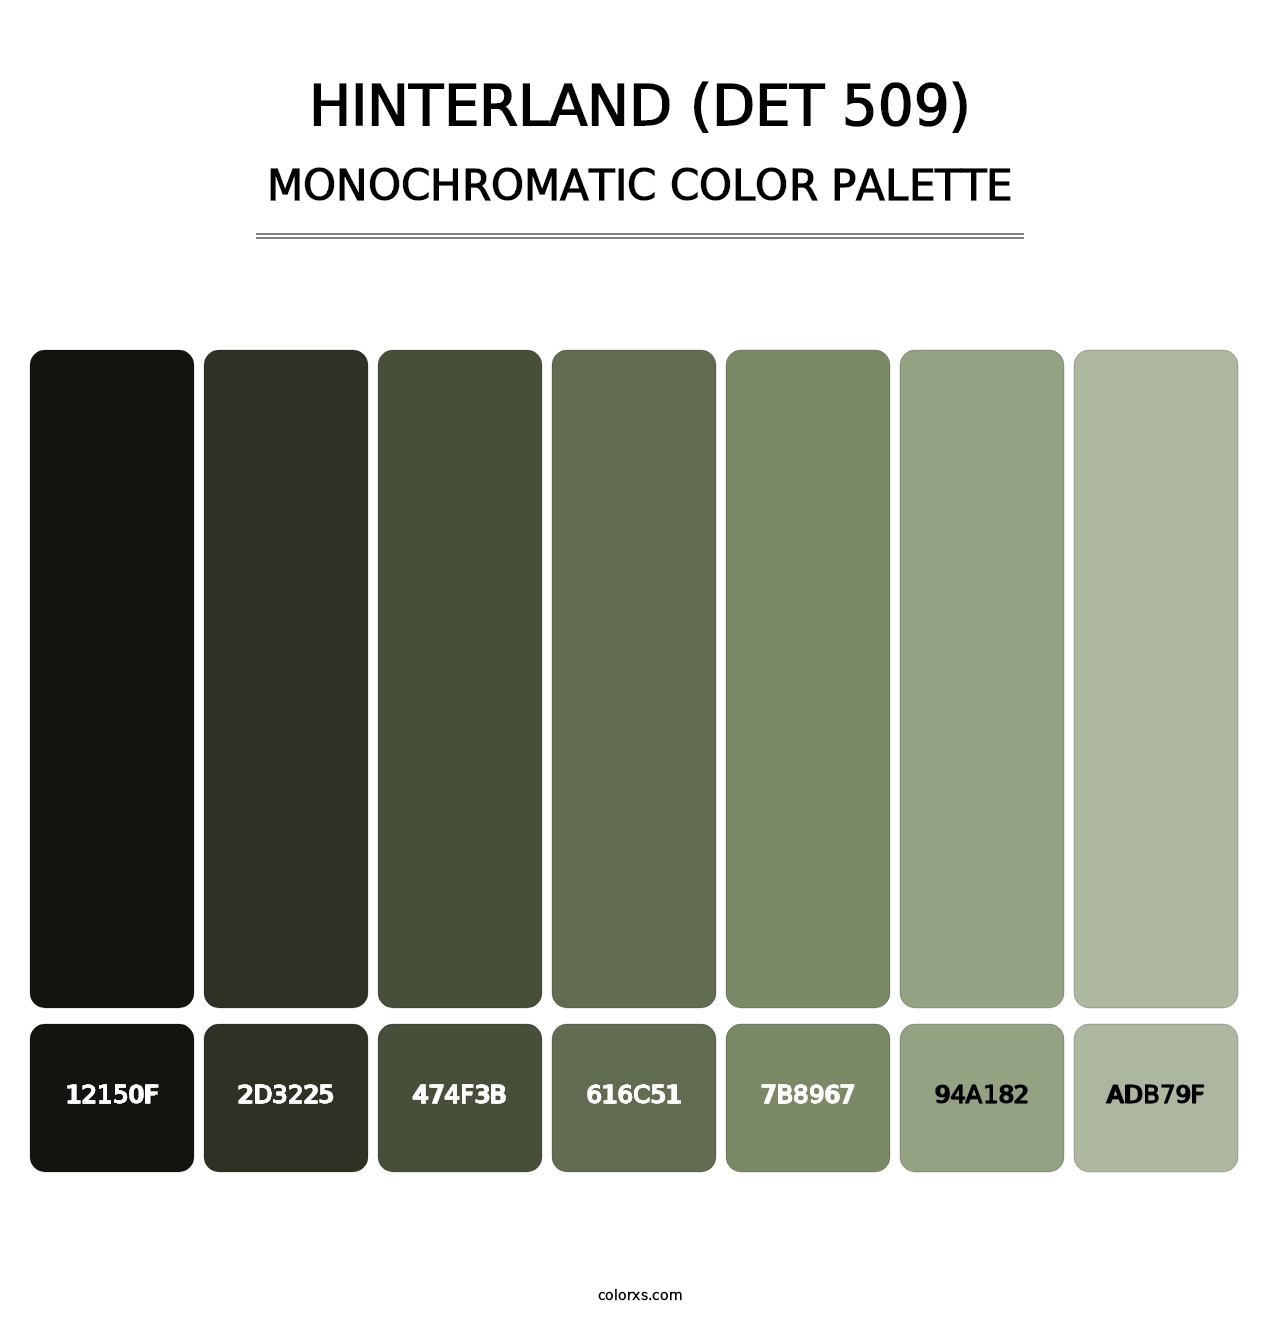 Hinterland (DET 509) - Monochromatic Color Palette